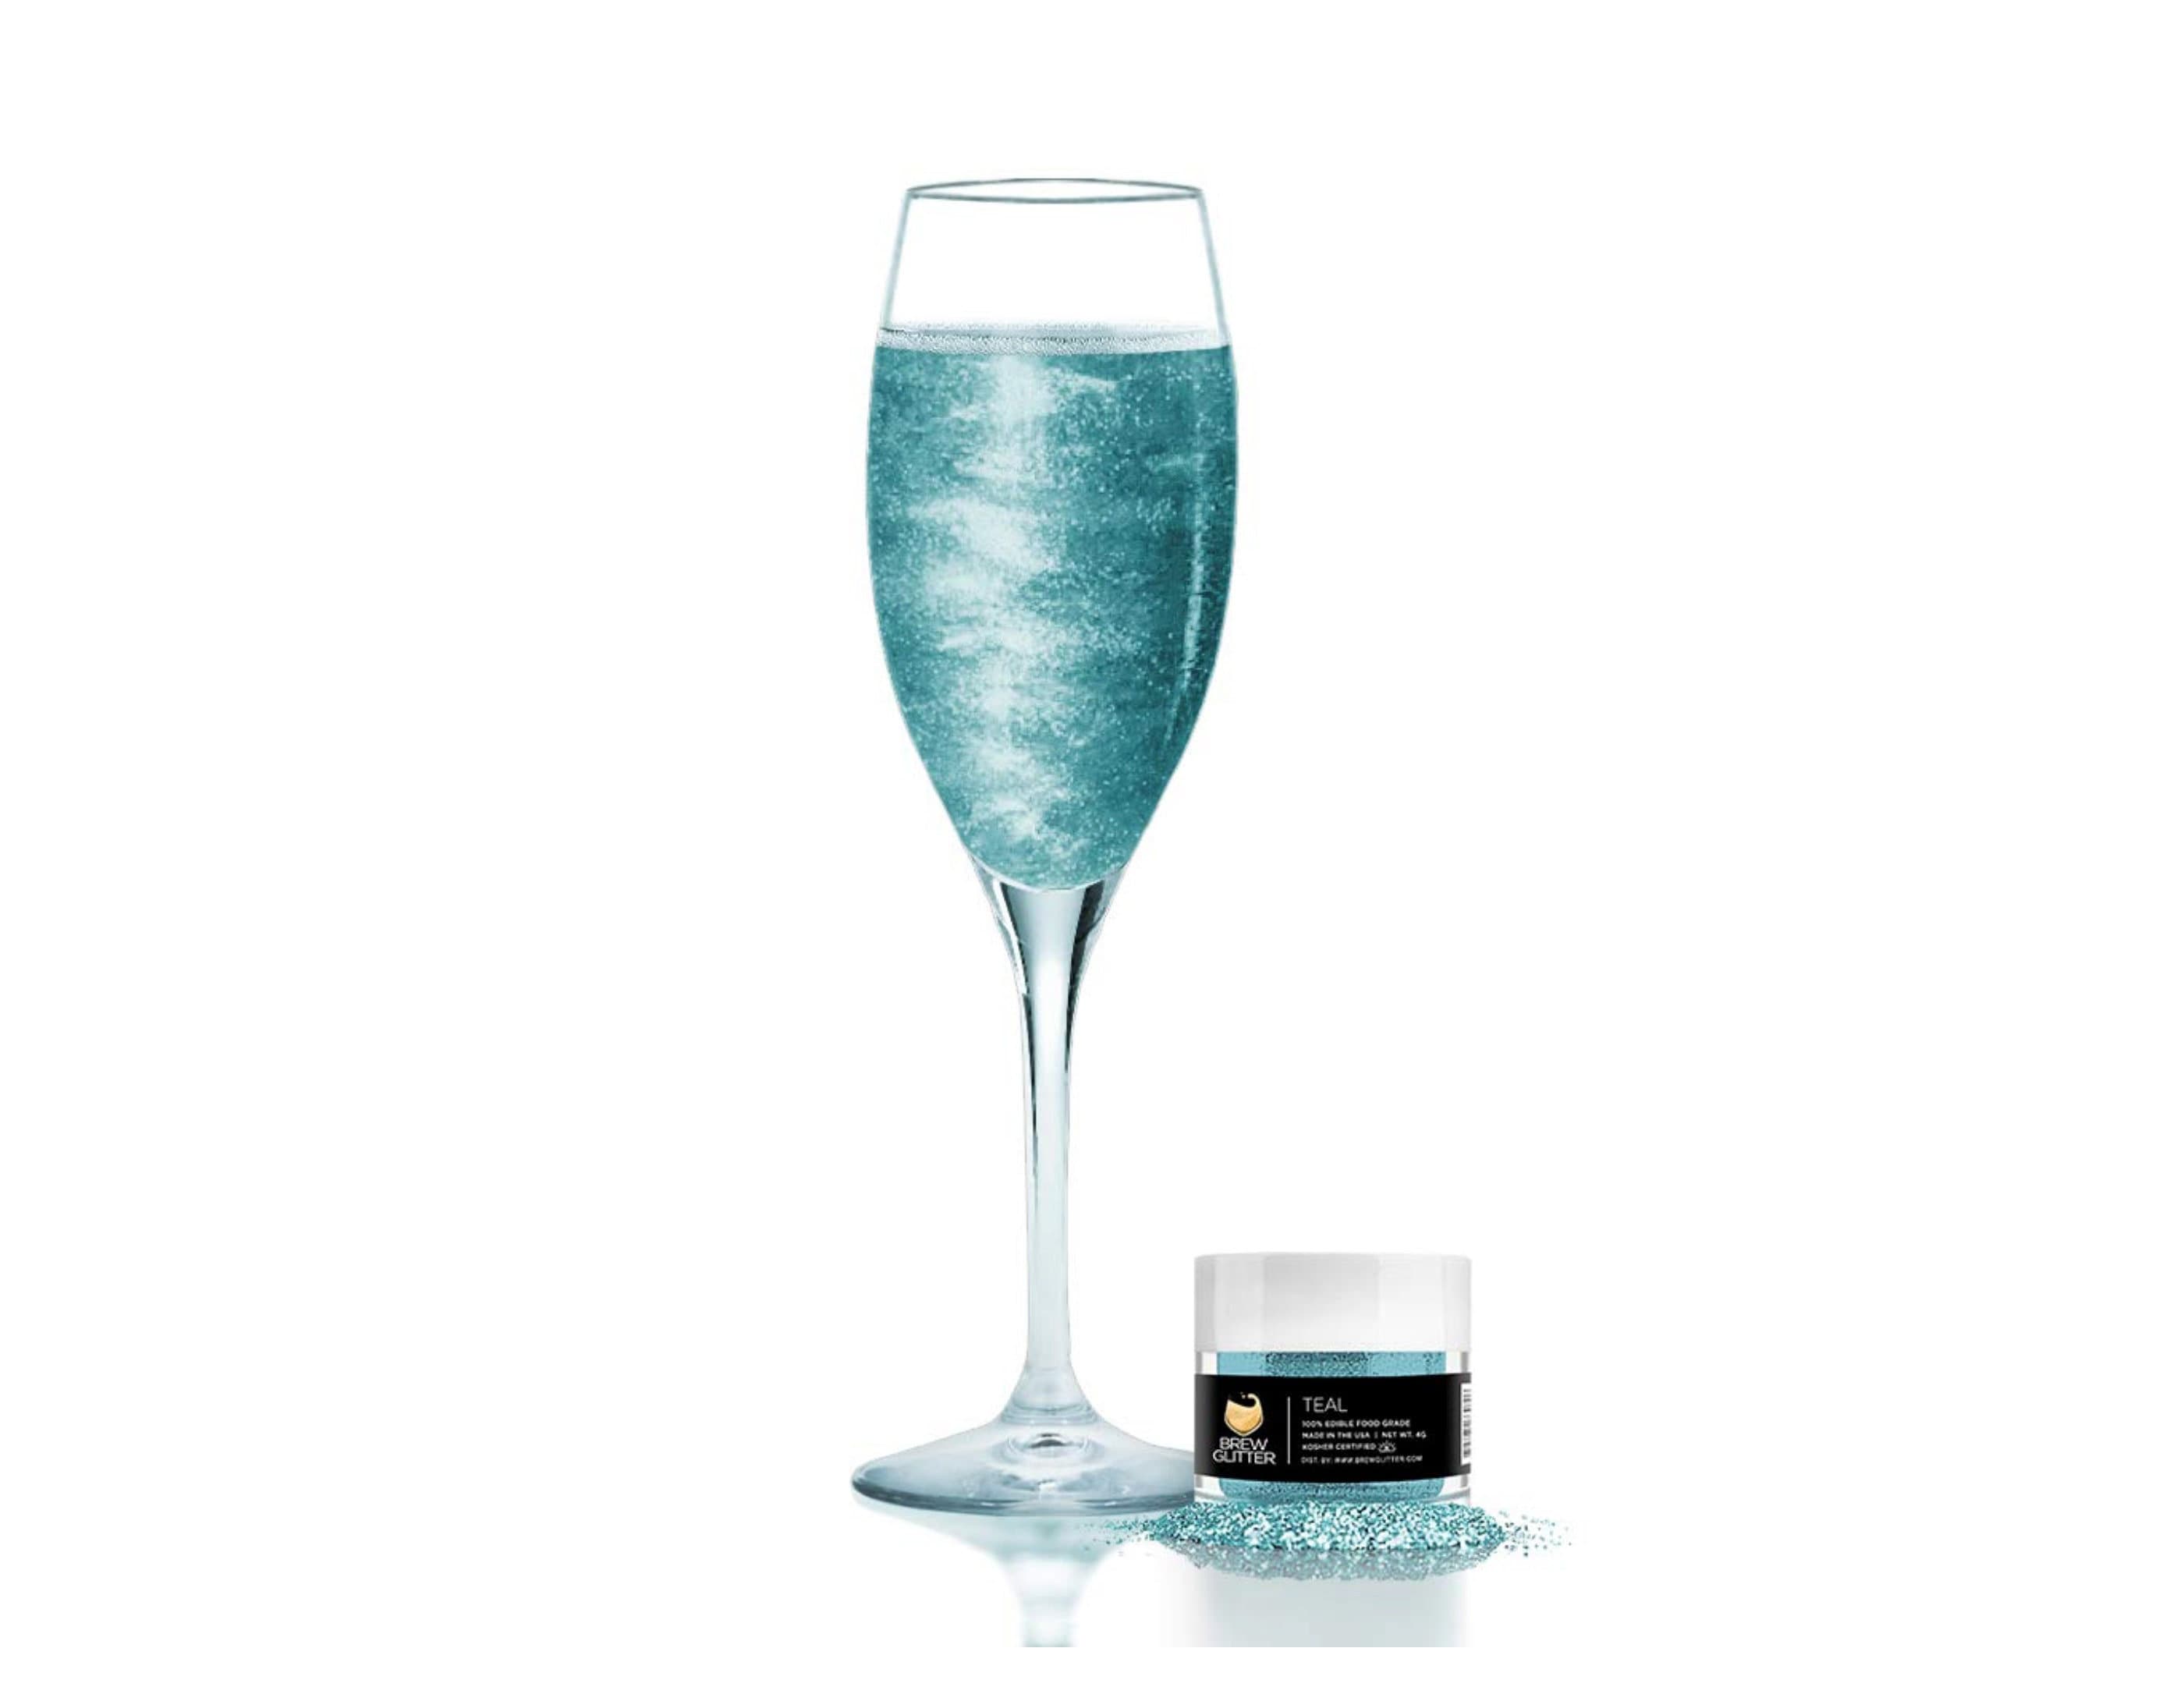 glittery.officiel on X: 🇫🇷GLITTERY SANS ALCOOL Nouvelle gamme de boissons  au contenu coloré & pailleté. Paillettes alimentaires 100% naturelles!  #glitterysansalcool #color #cocktails #cocktail #bulles #barista #marketing  #baristalife #blog #blogger